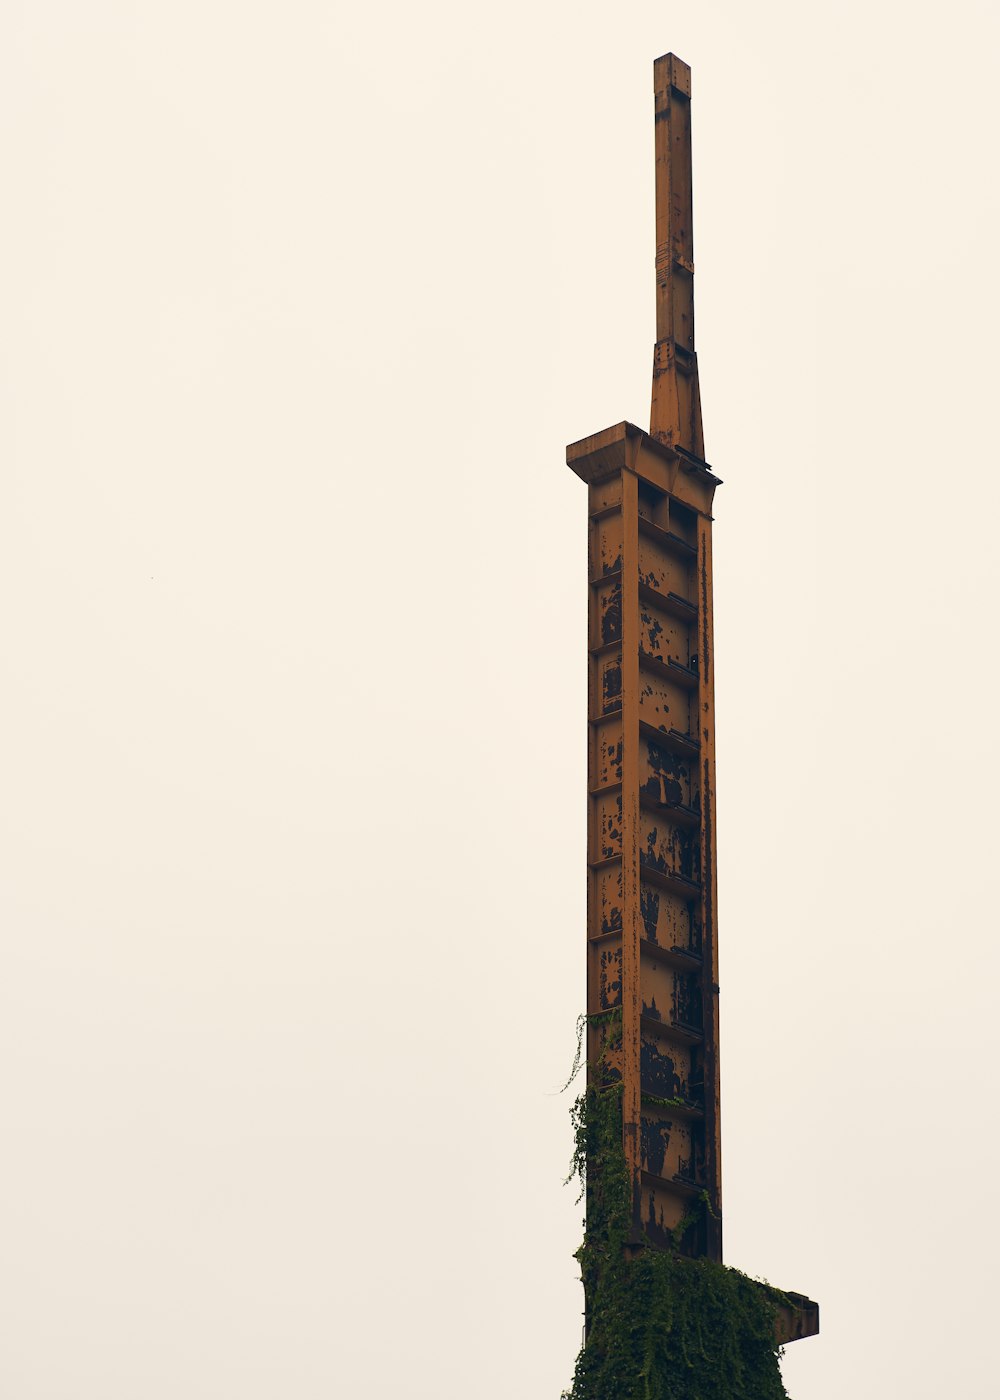 측면에 시계가있는 매우 높은 타워